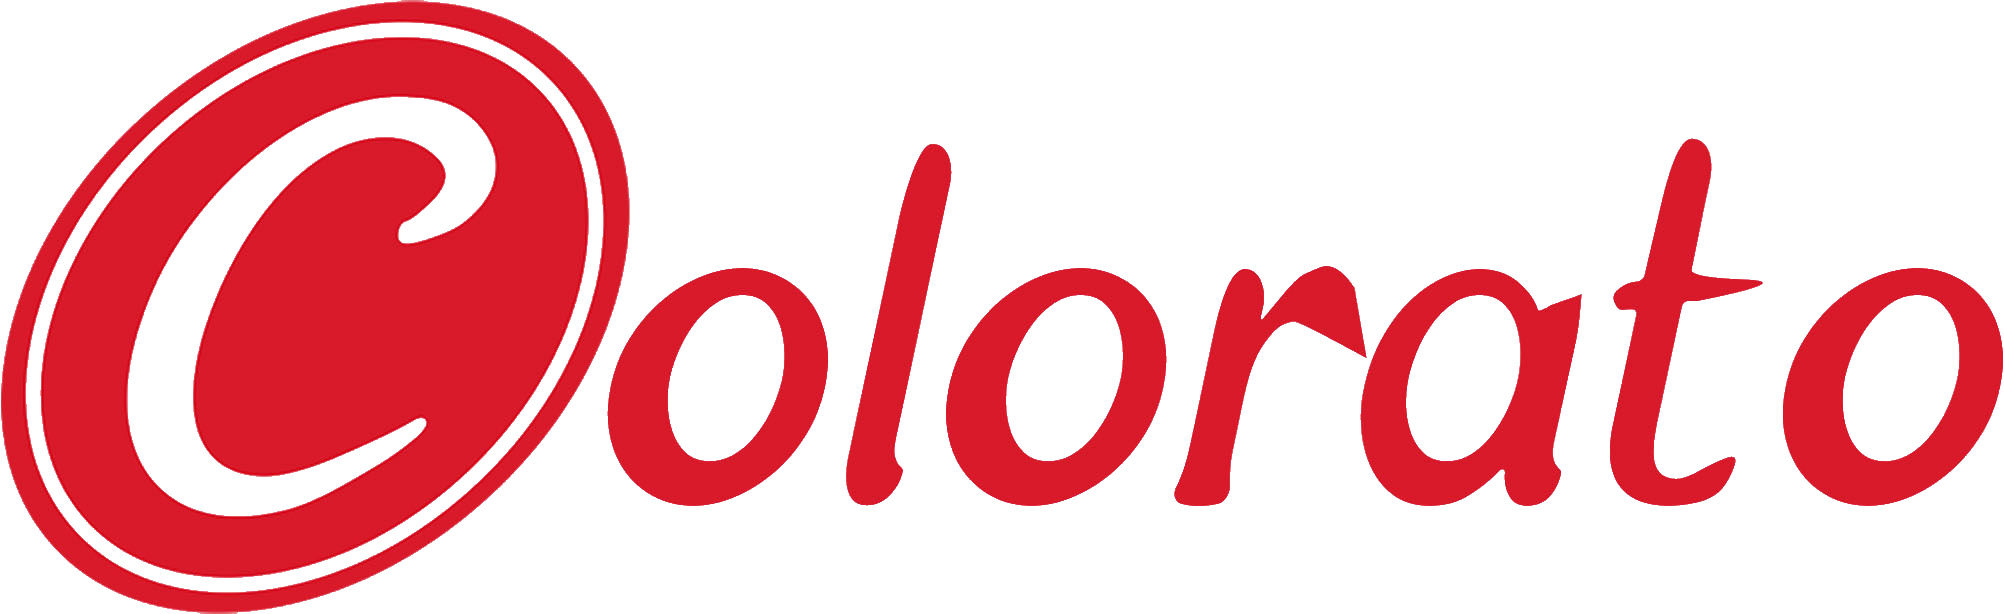 Colorato